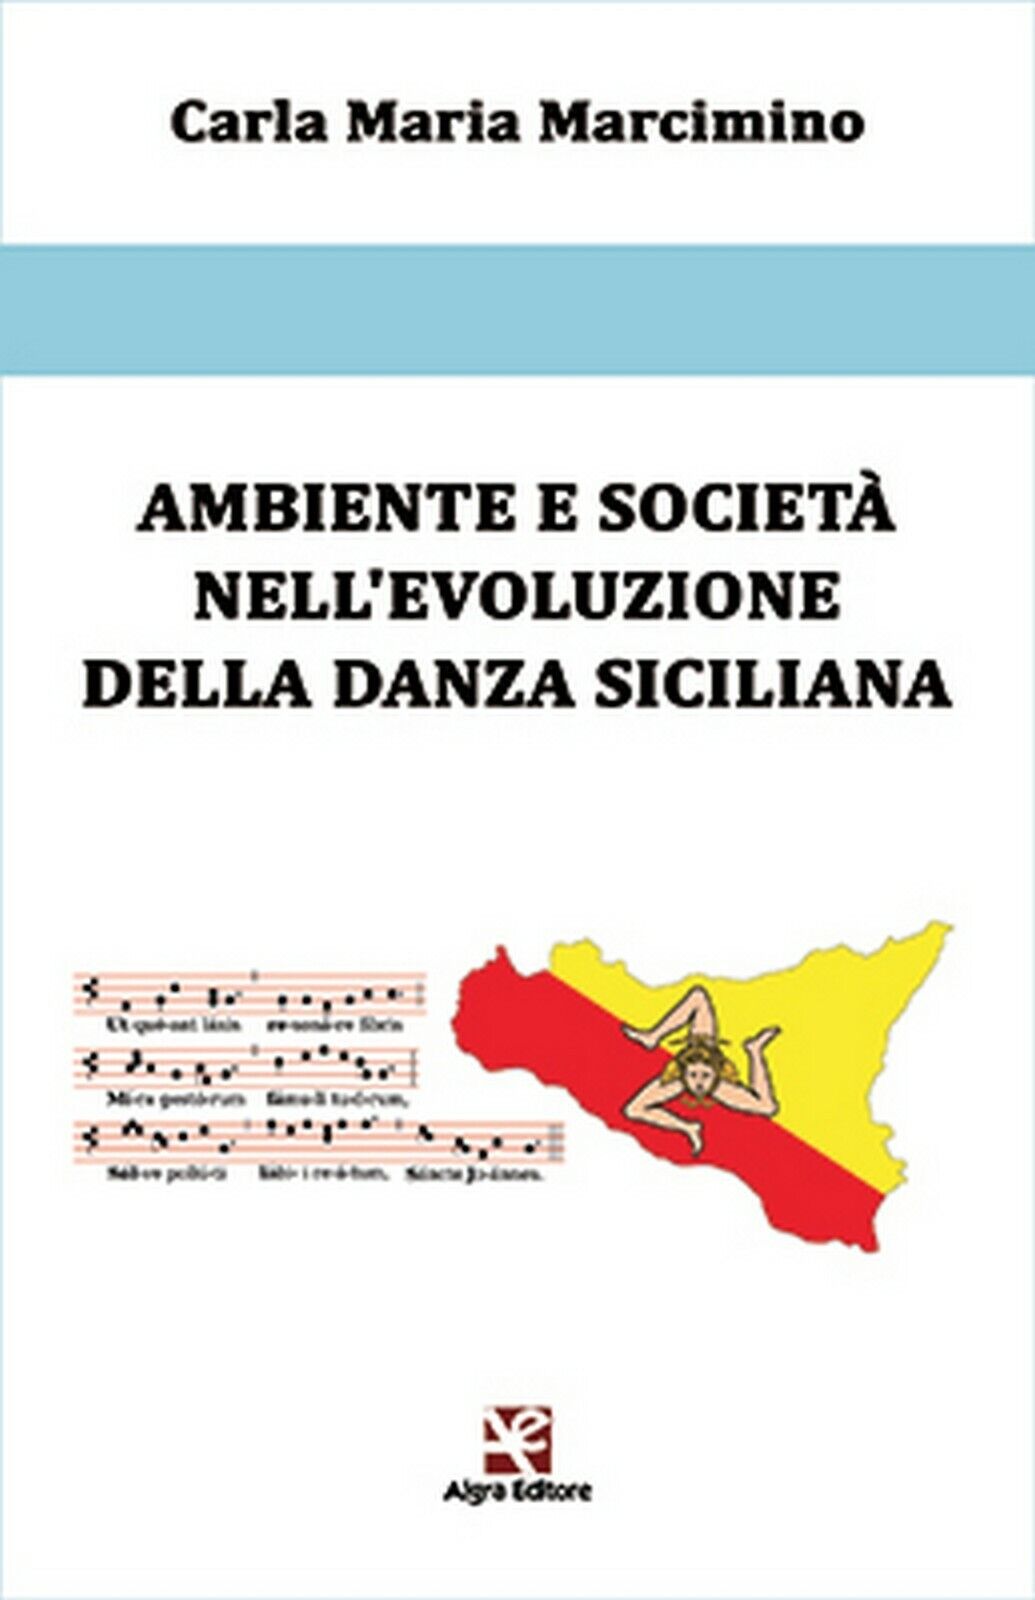 Ambiente e societ? nelL'evoluzione della danza siciliana, Carla Maria Marcimino libro usato